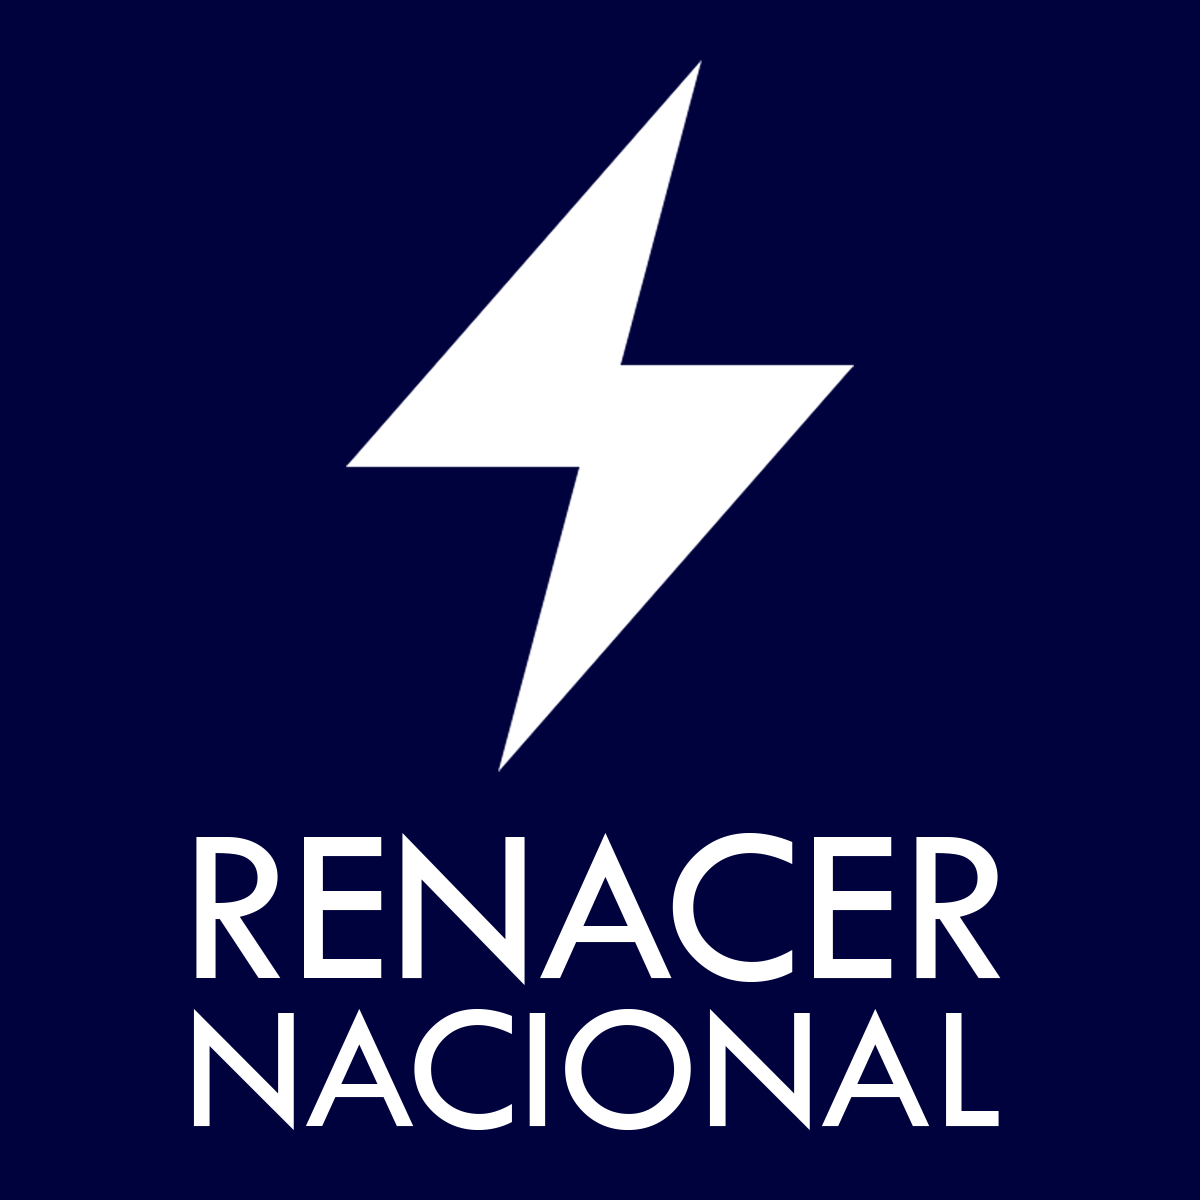 Renacer Nacional